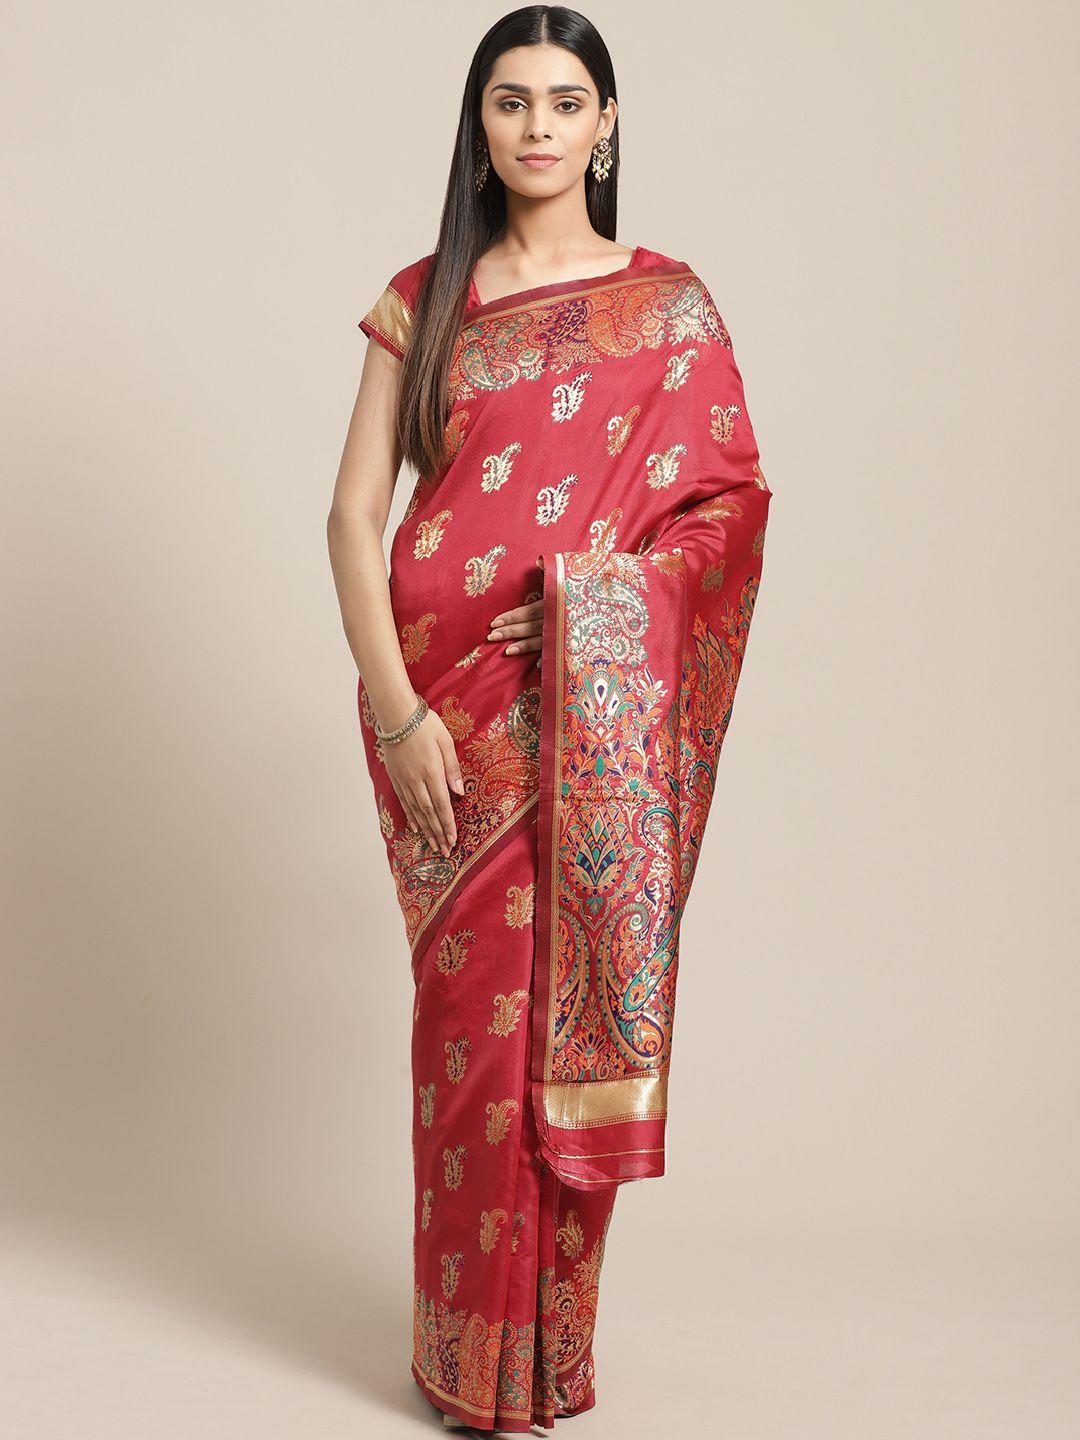 saree mall red & golden paisley woven design banarasi saree